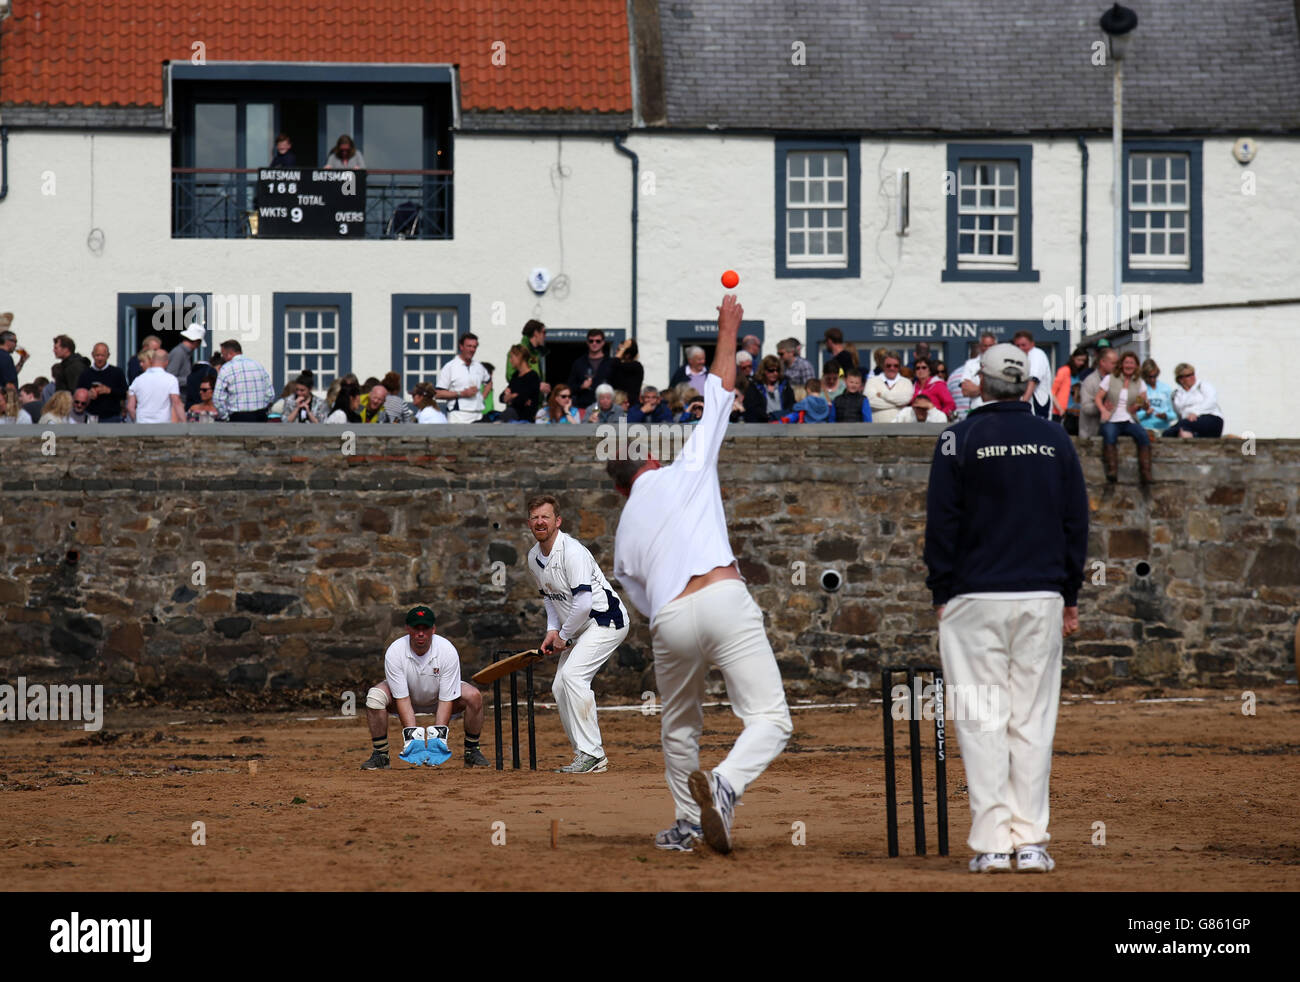 Action from the Ship Inn Cricket team against Obolensky's Heroes on Elie beach. Stock Photo